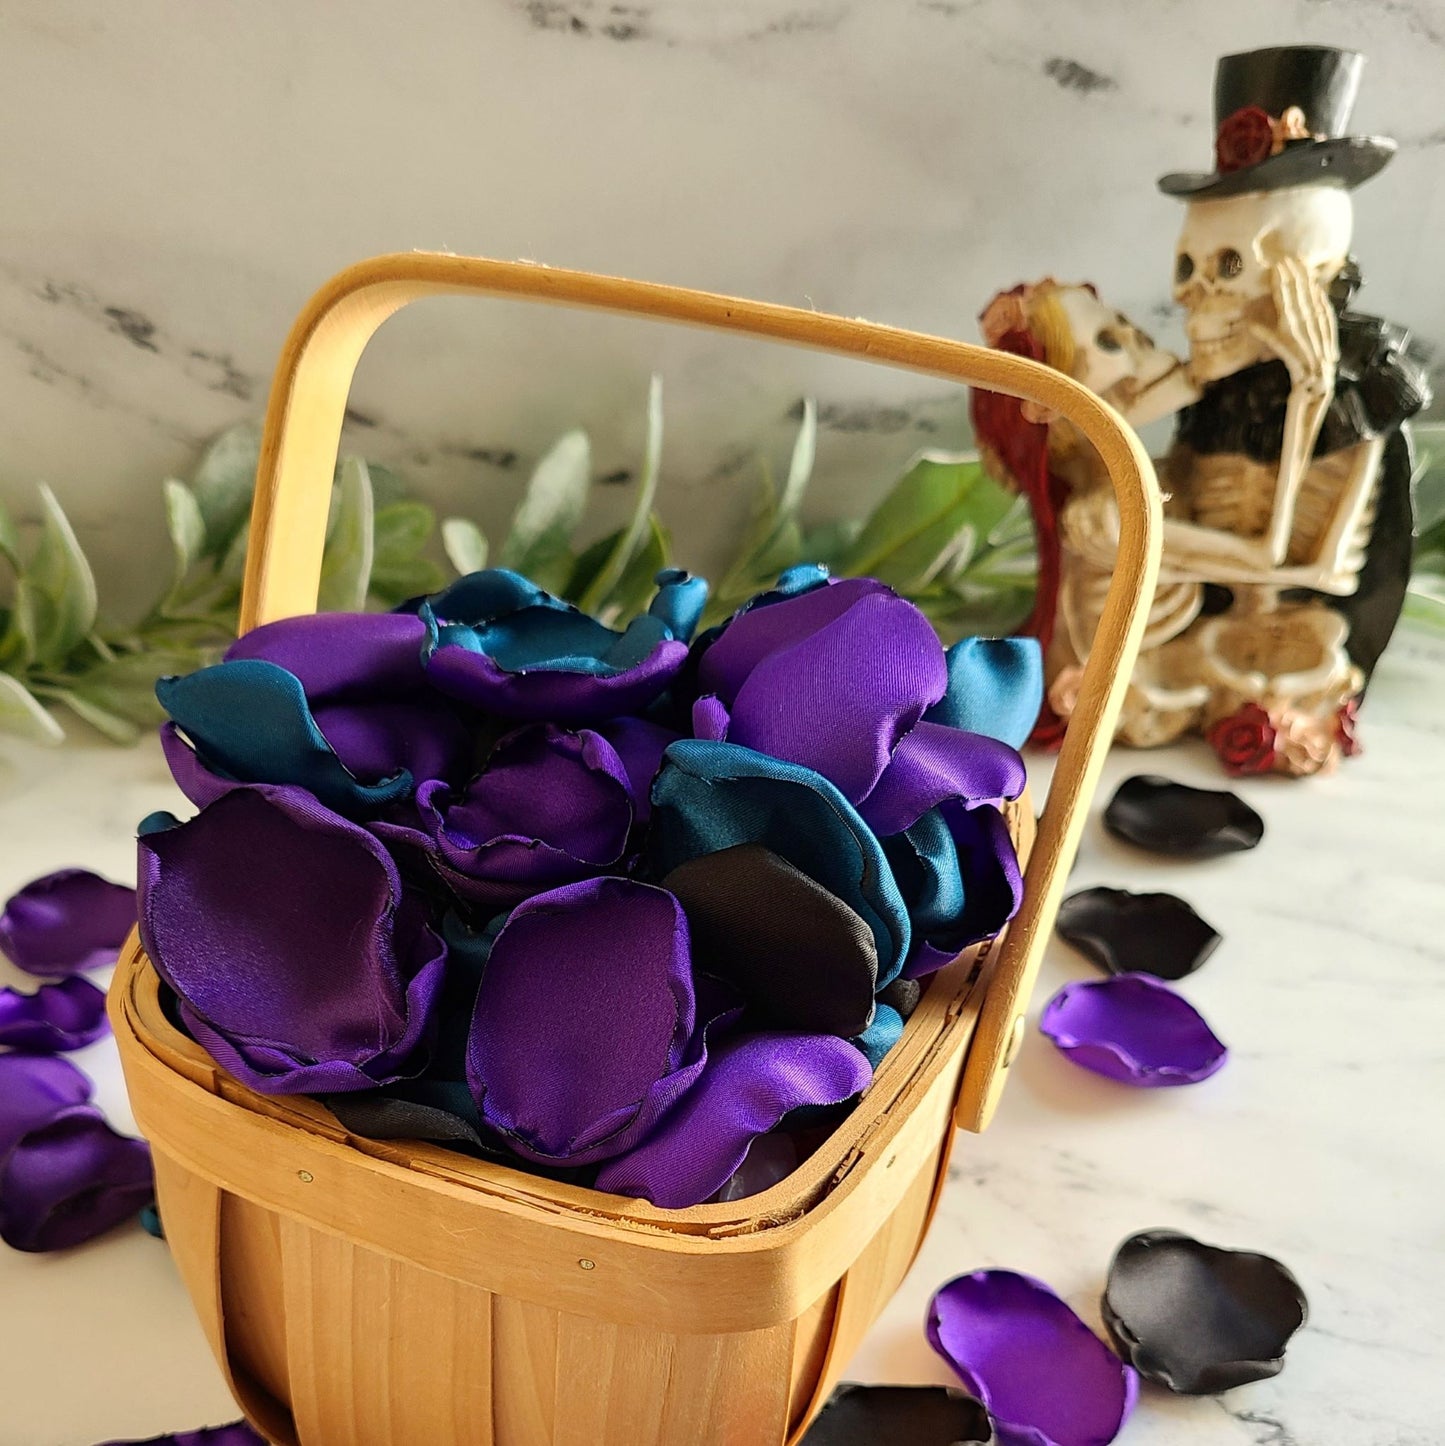 Bride or Die Halloween Rose Petals, Purple teal and black flower petals